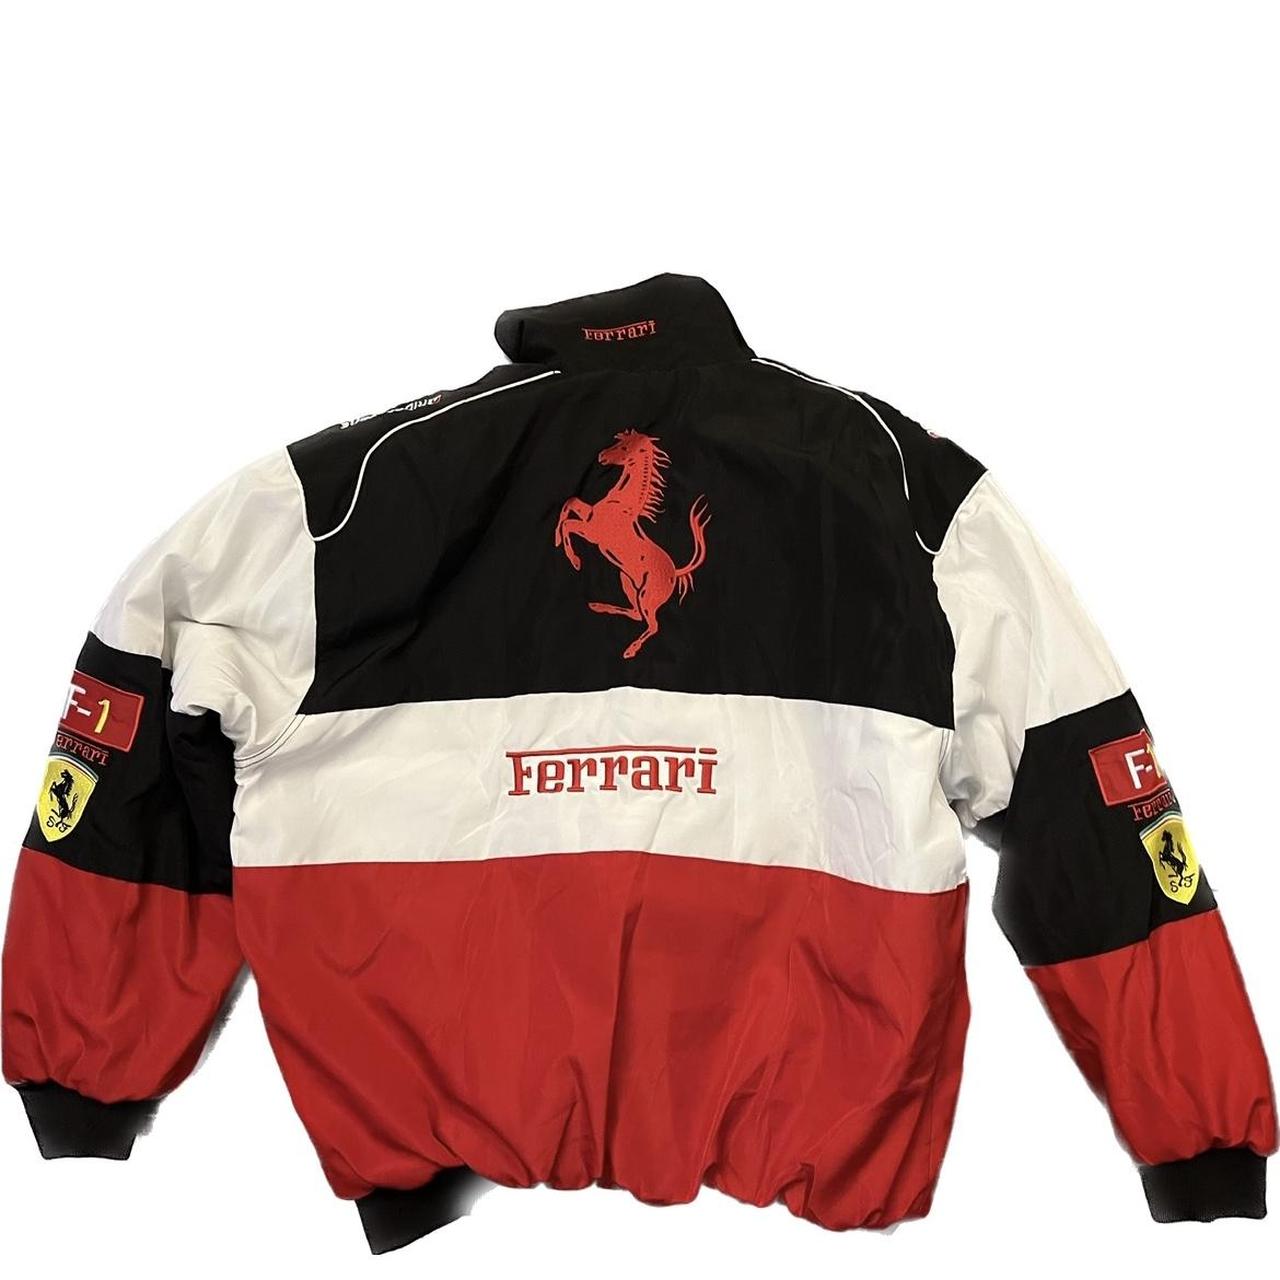 F1 Ferrari racing jacket, NASCAR racing, zipper,... - Depop